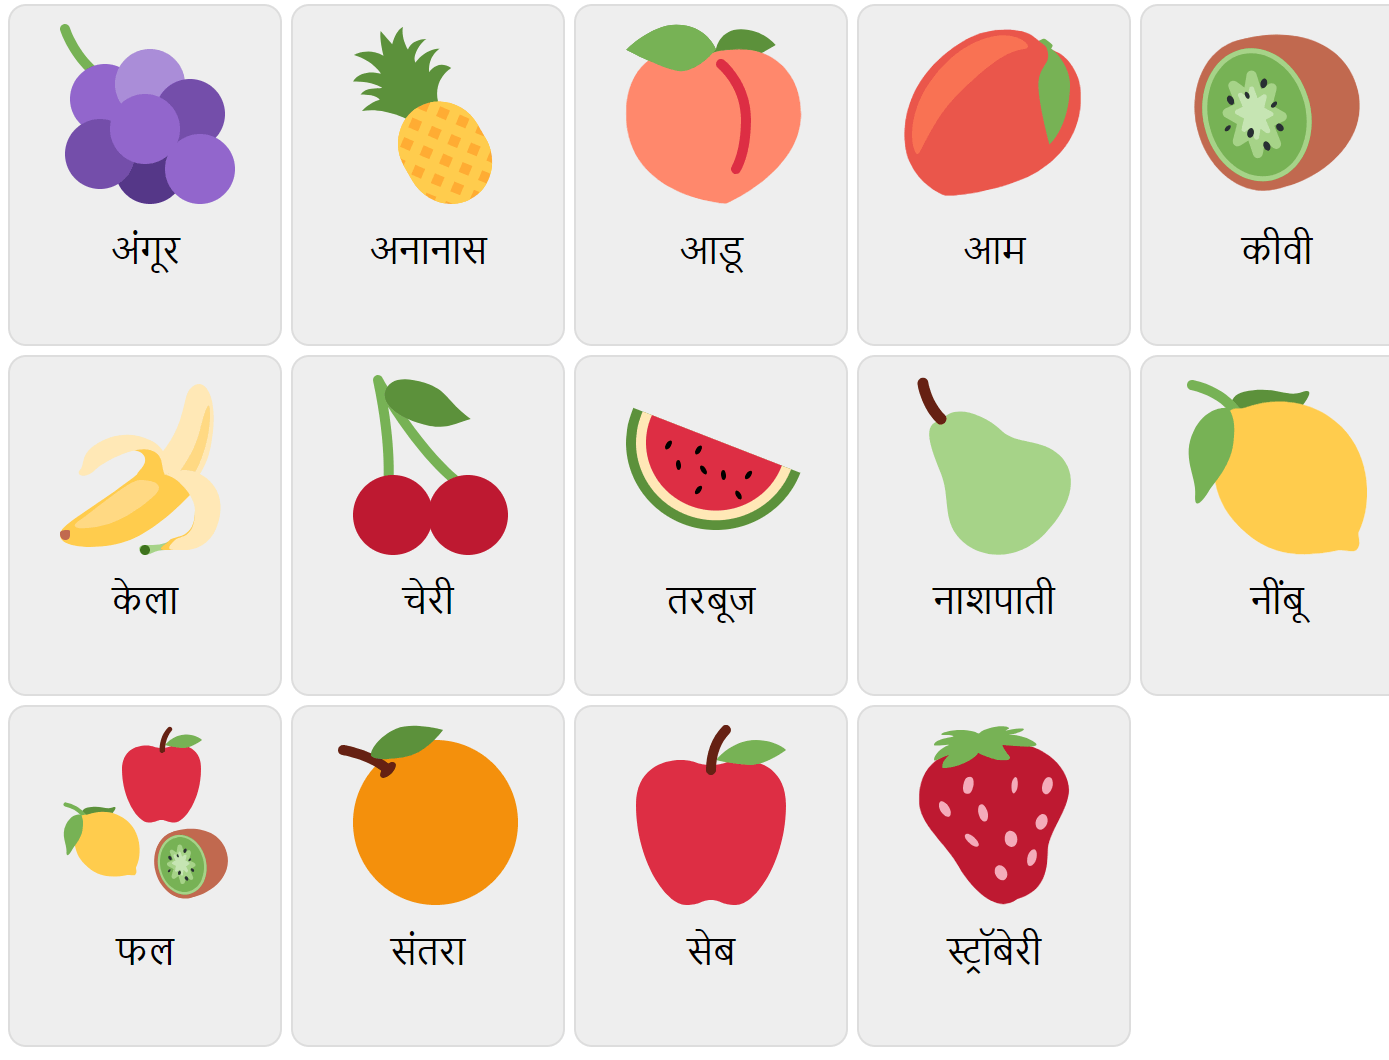 Frukter på hindi